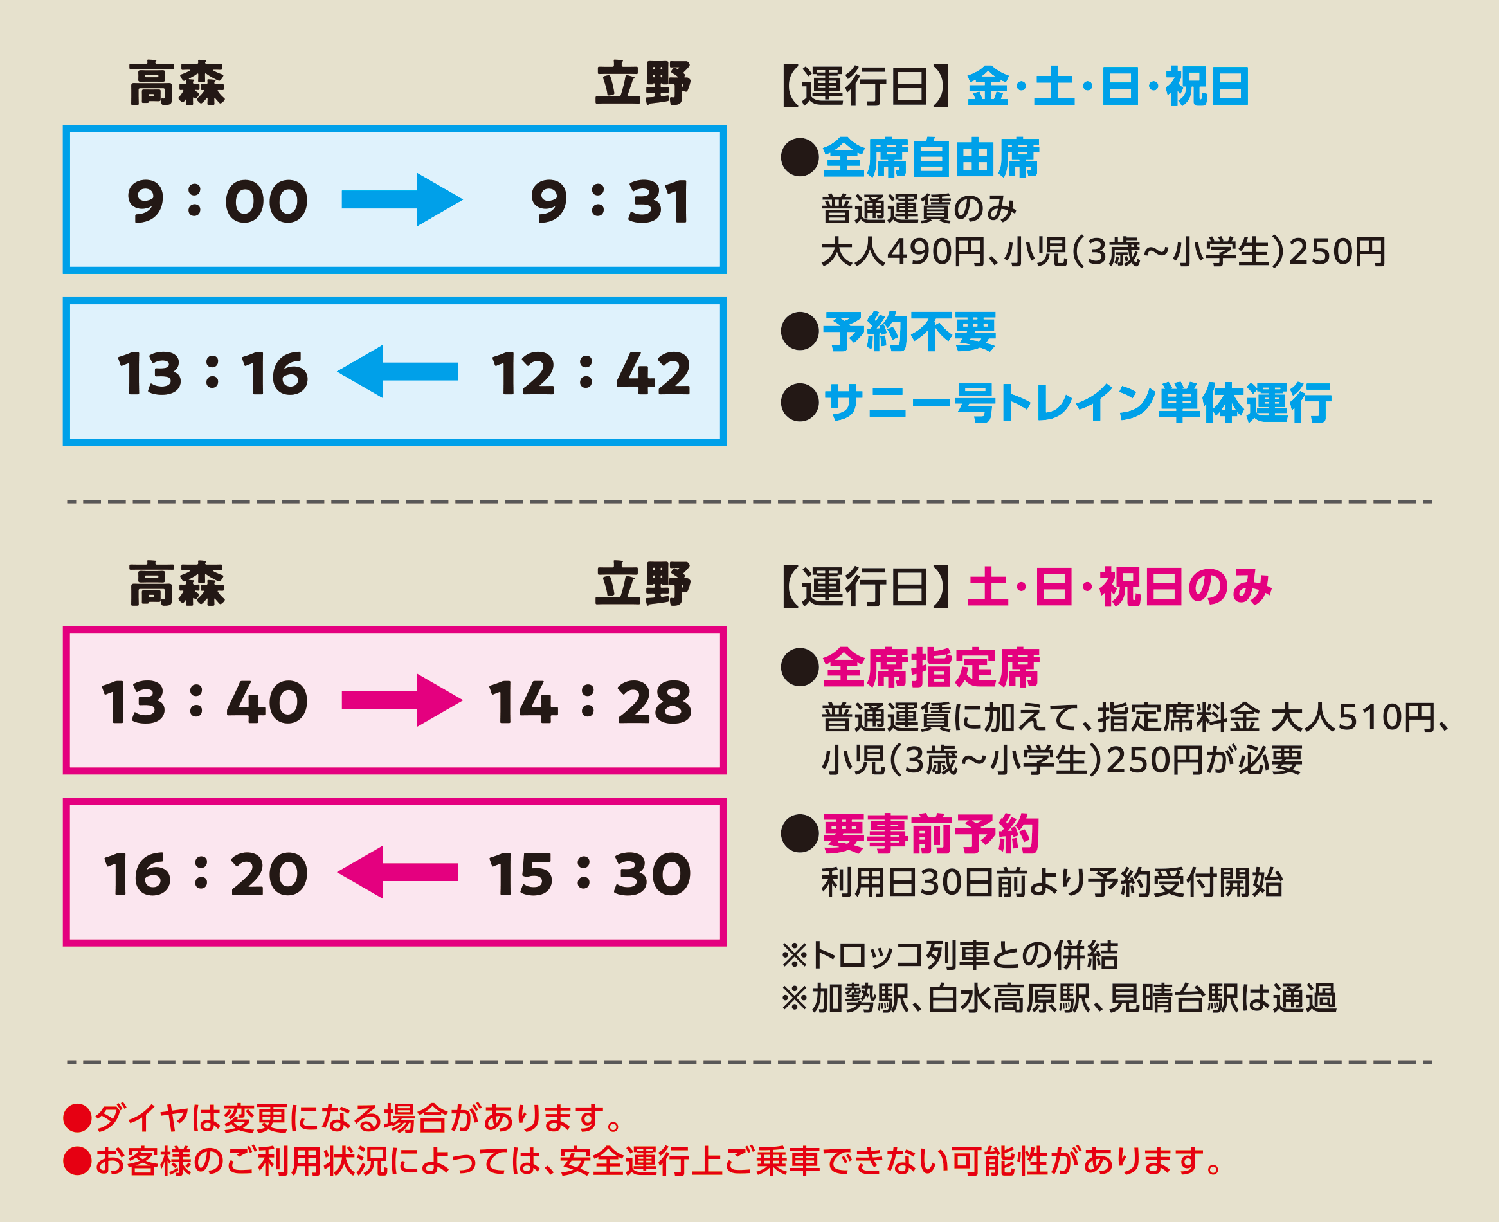 【3月16日〜】サニー号トレインダイヤ変更のお知らせ